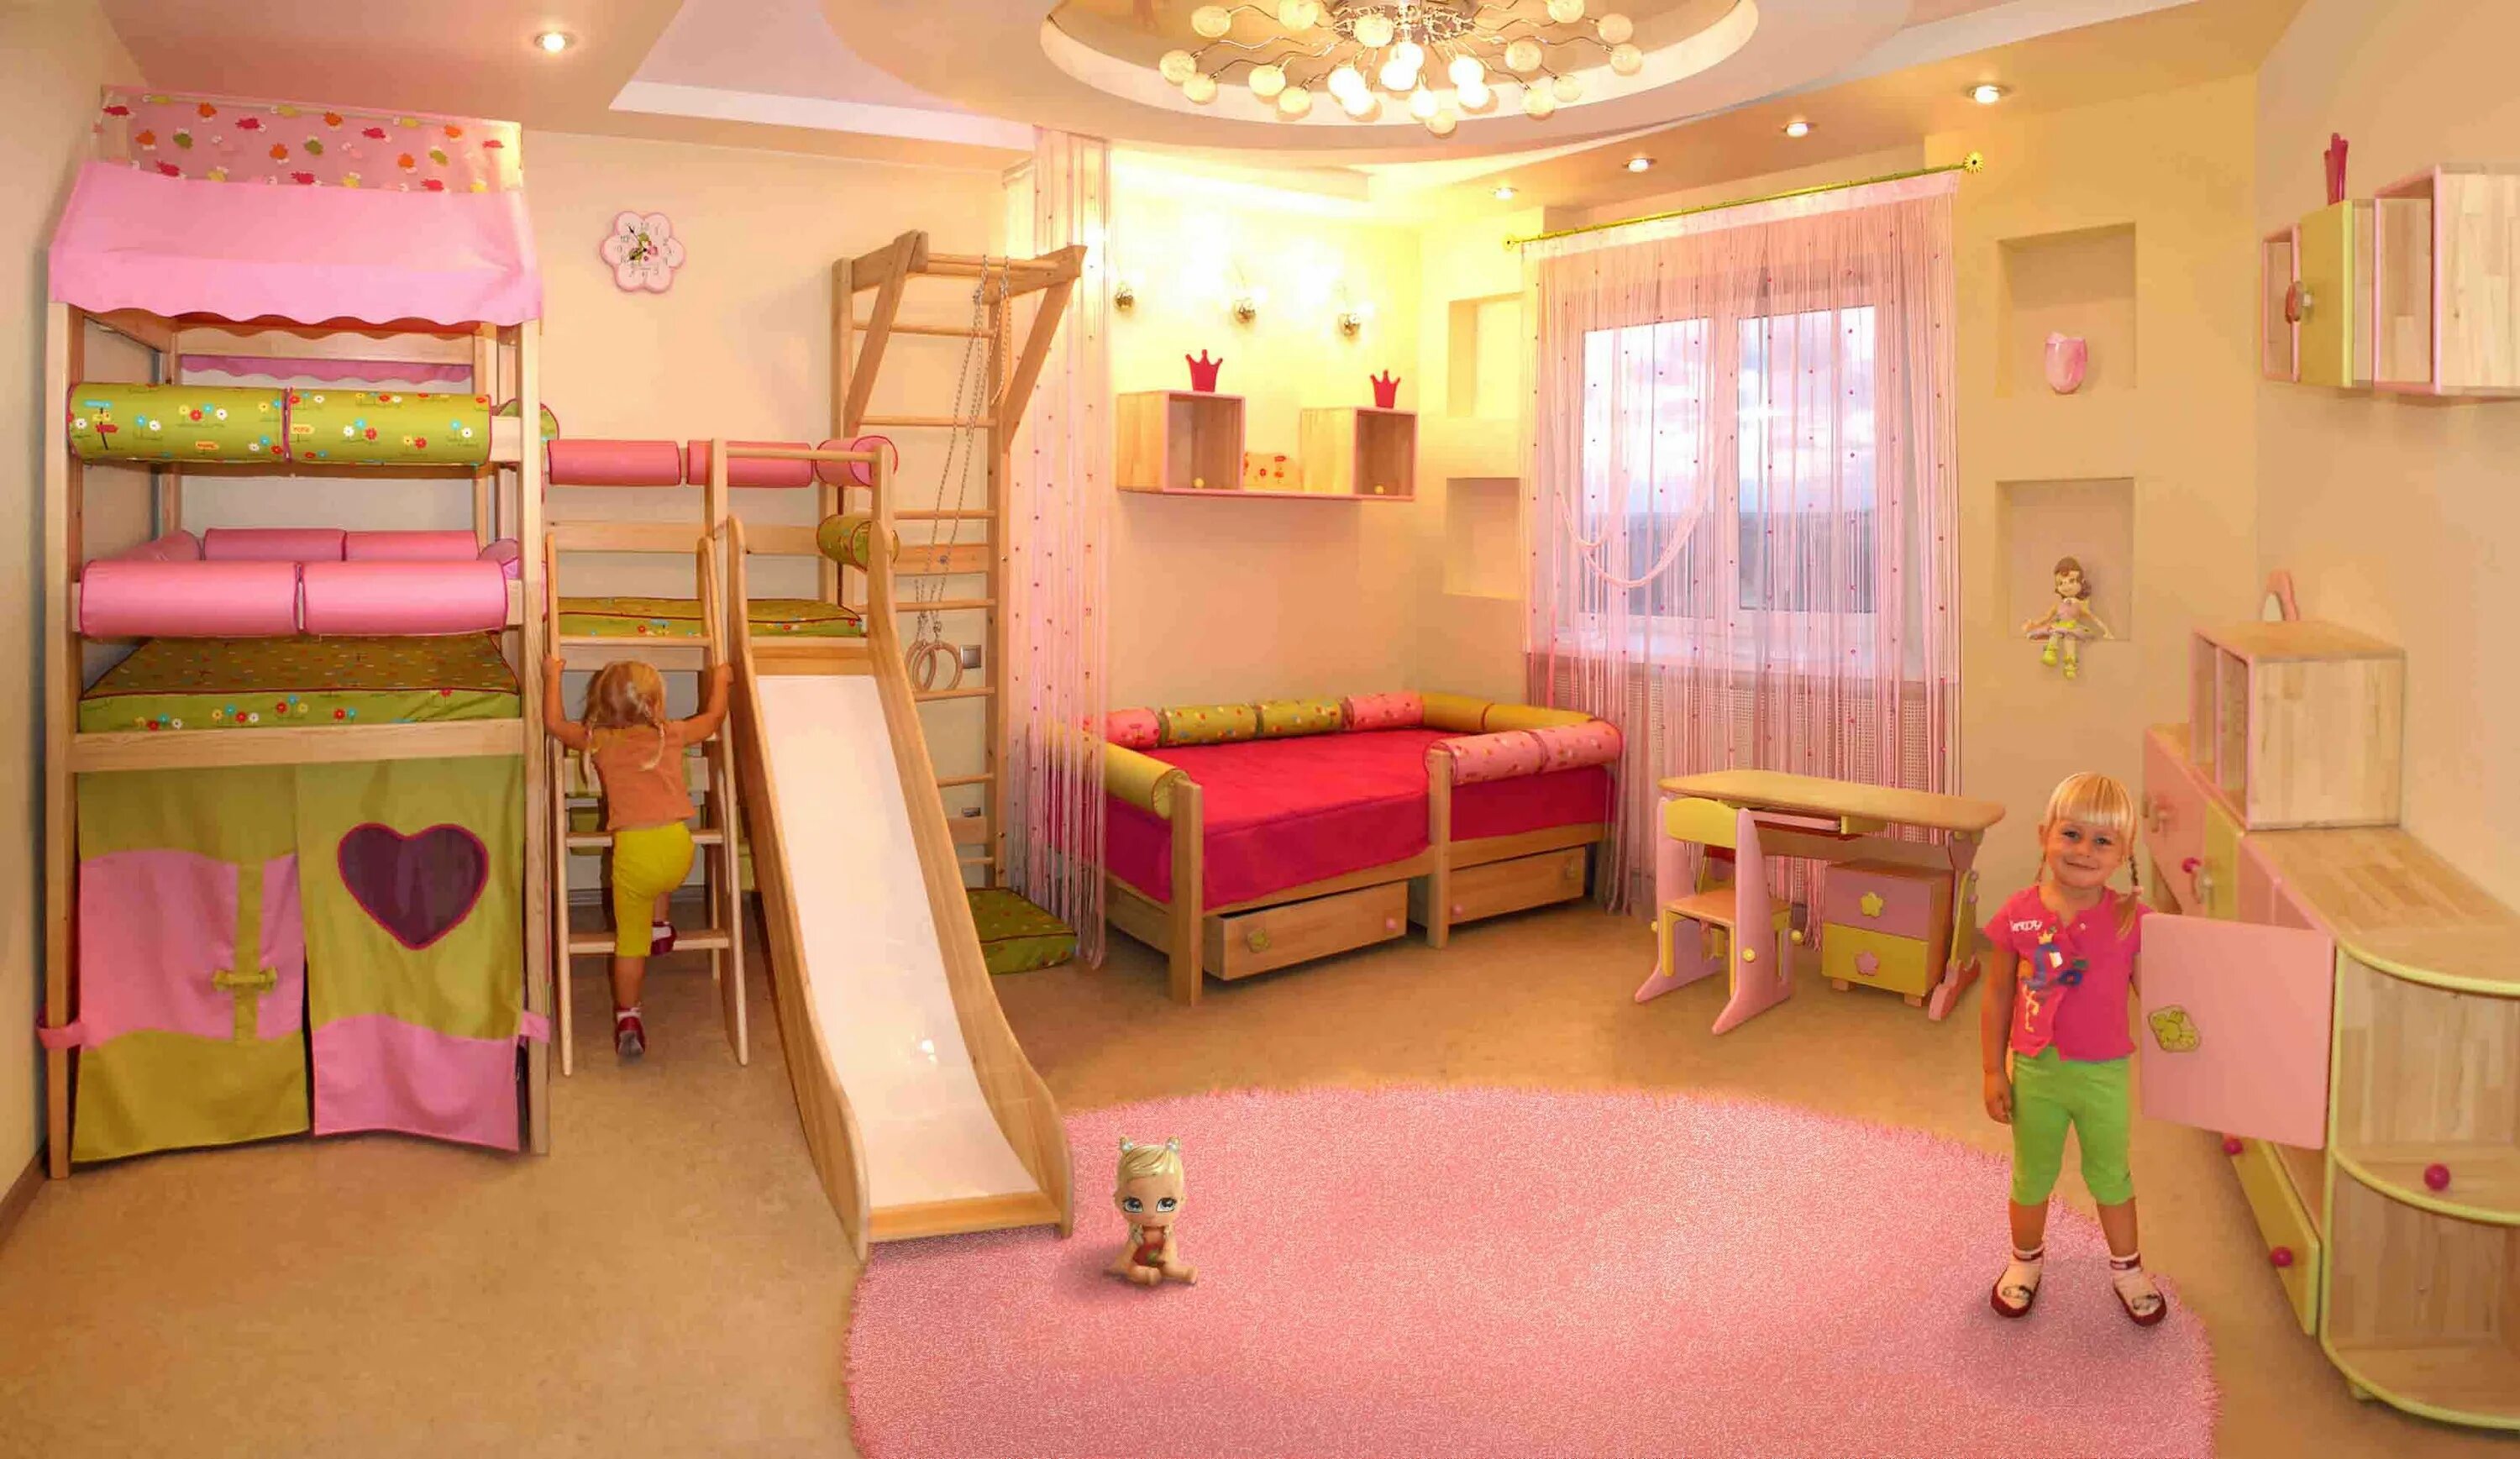 Комнате ребенка должно быть. Комната для девочки 3 года. Детская комната для девочки 6 лет. Комната для девочки 2 года. Детская комната для девочки 3 года.